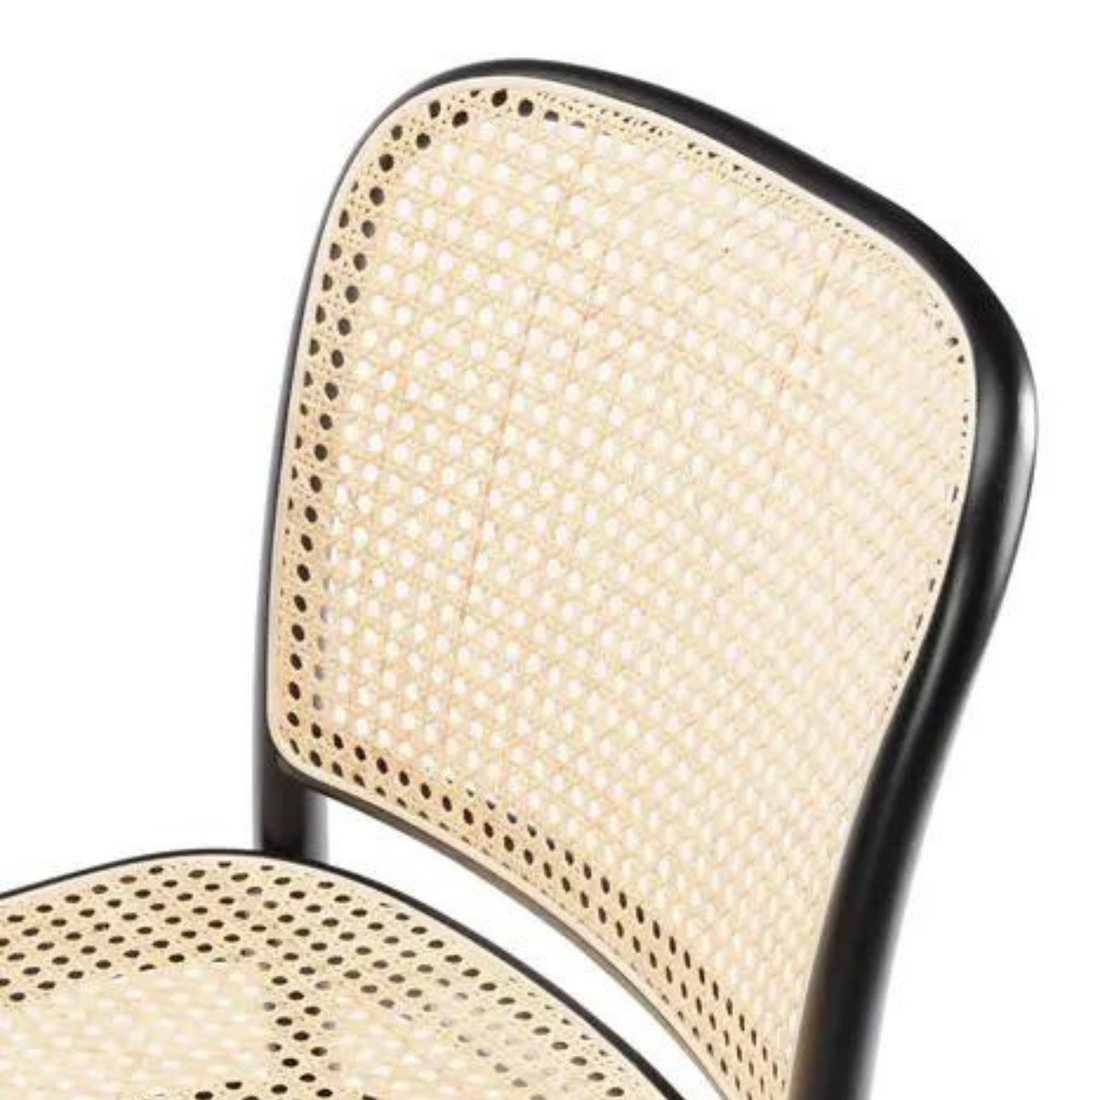 811 | Cane Chair